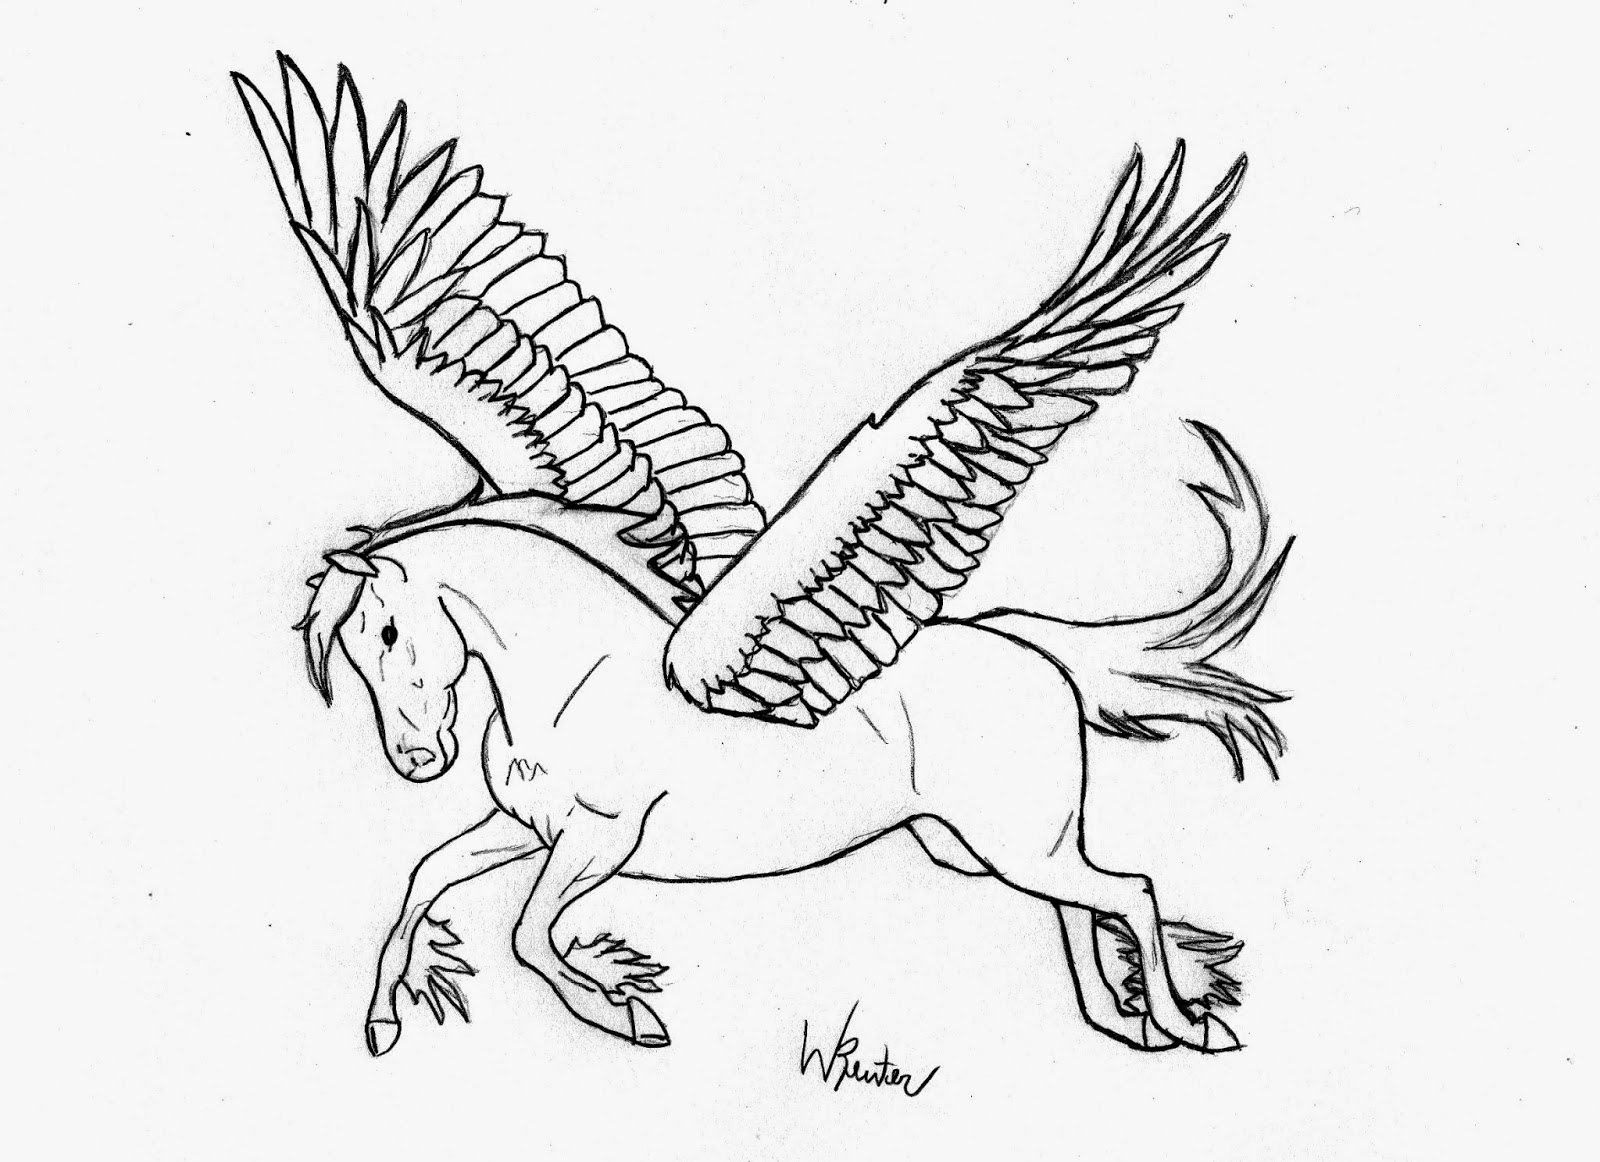 Como desenhar um cavalo de frente - Como desenhar